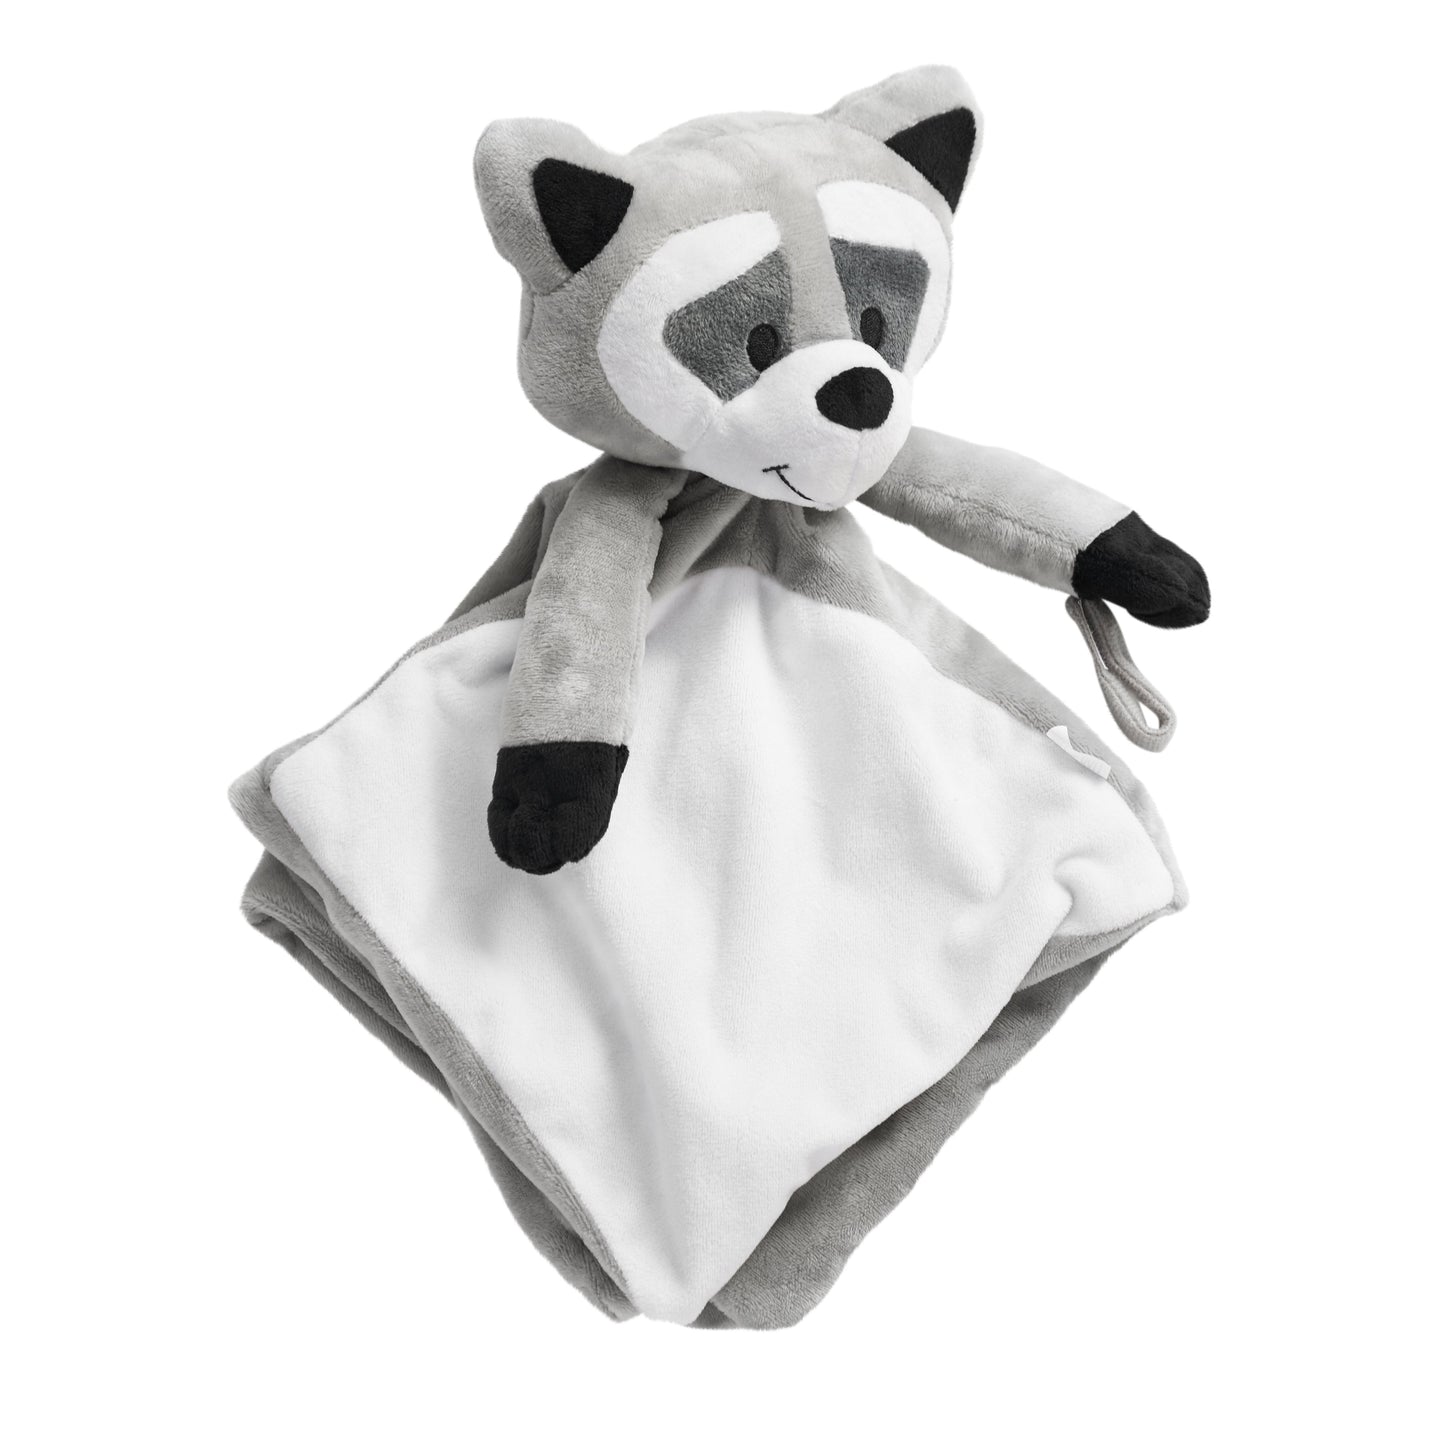 Sleep Toy - Bandit The Raccoon – Riff Raff Baby US